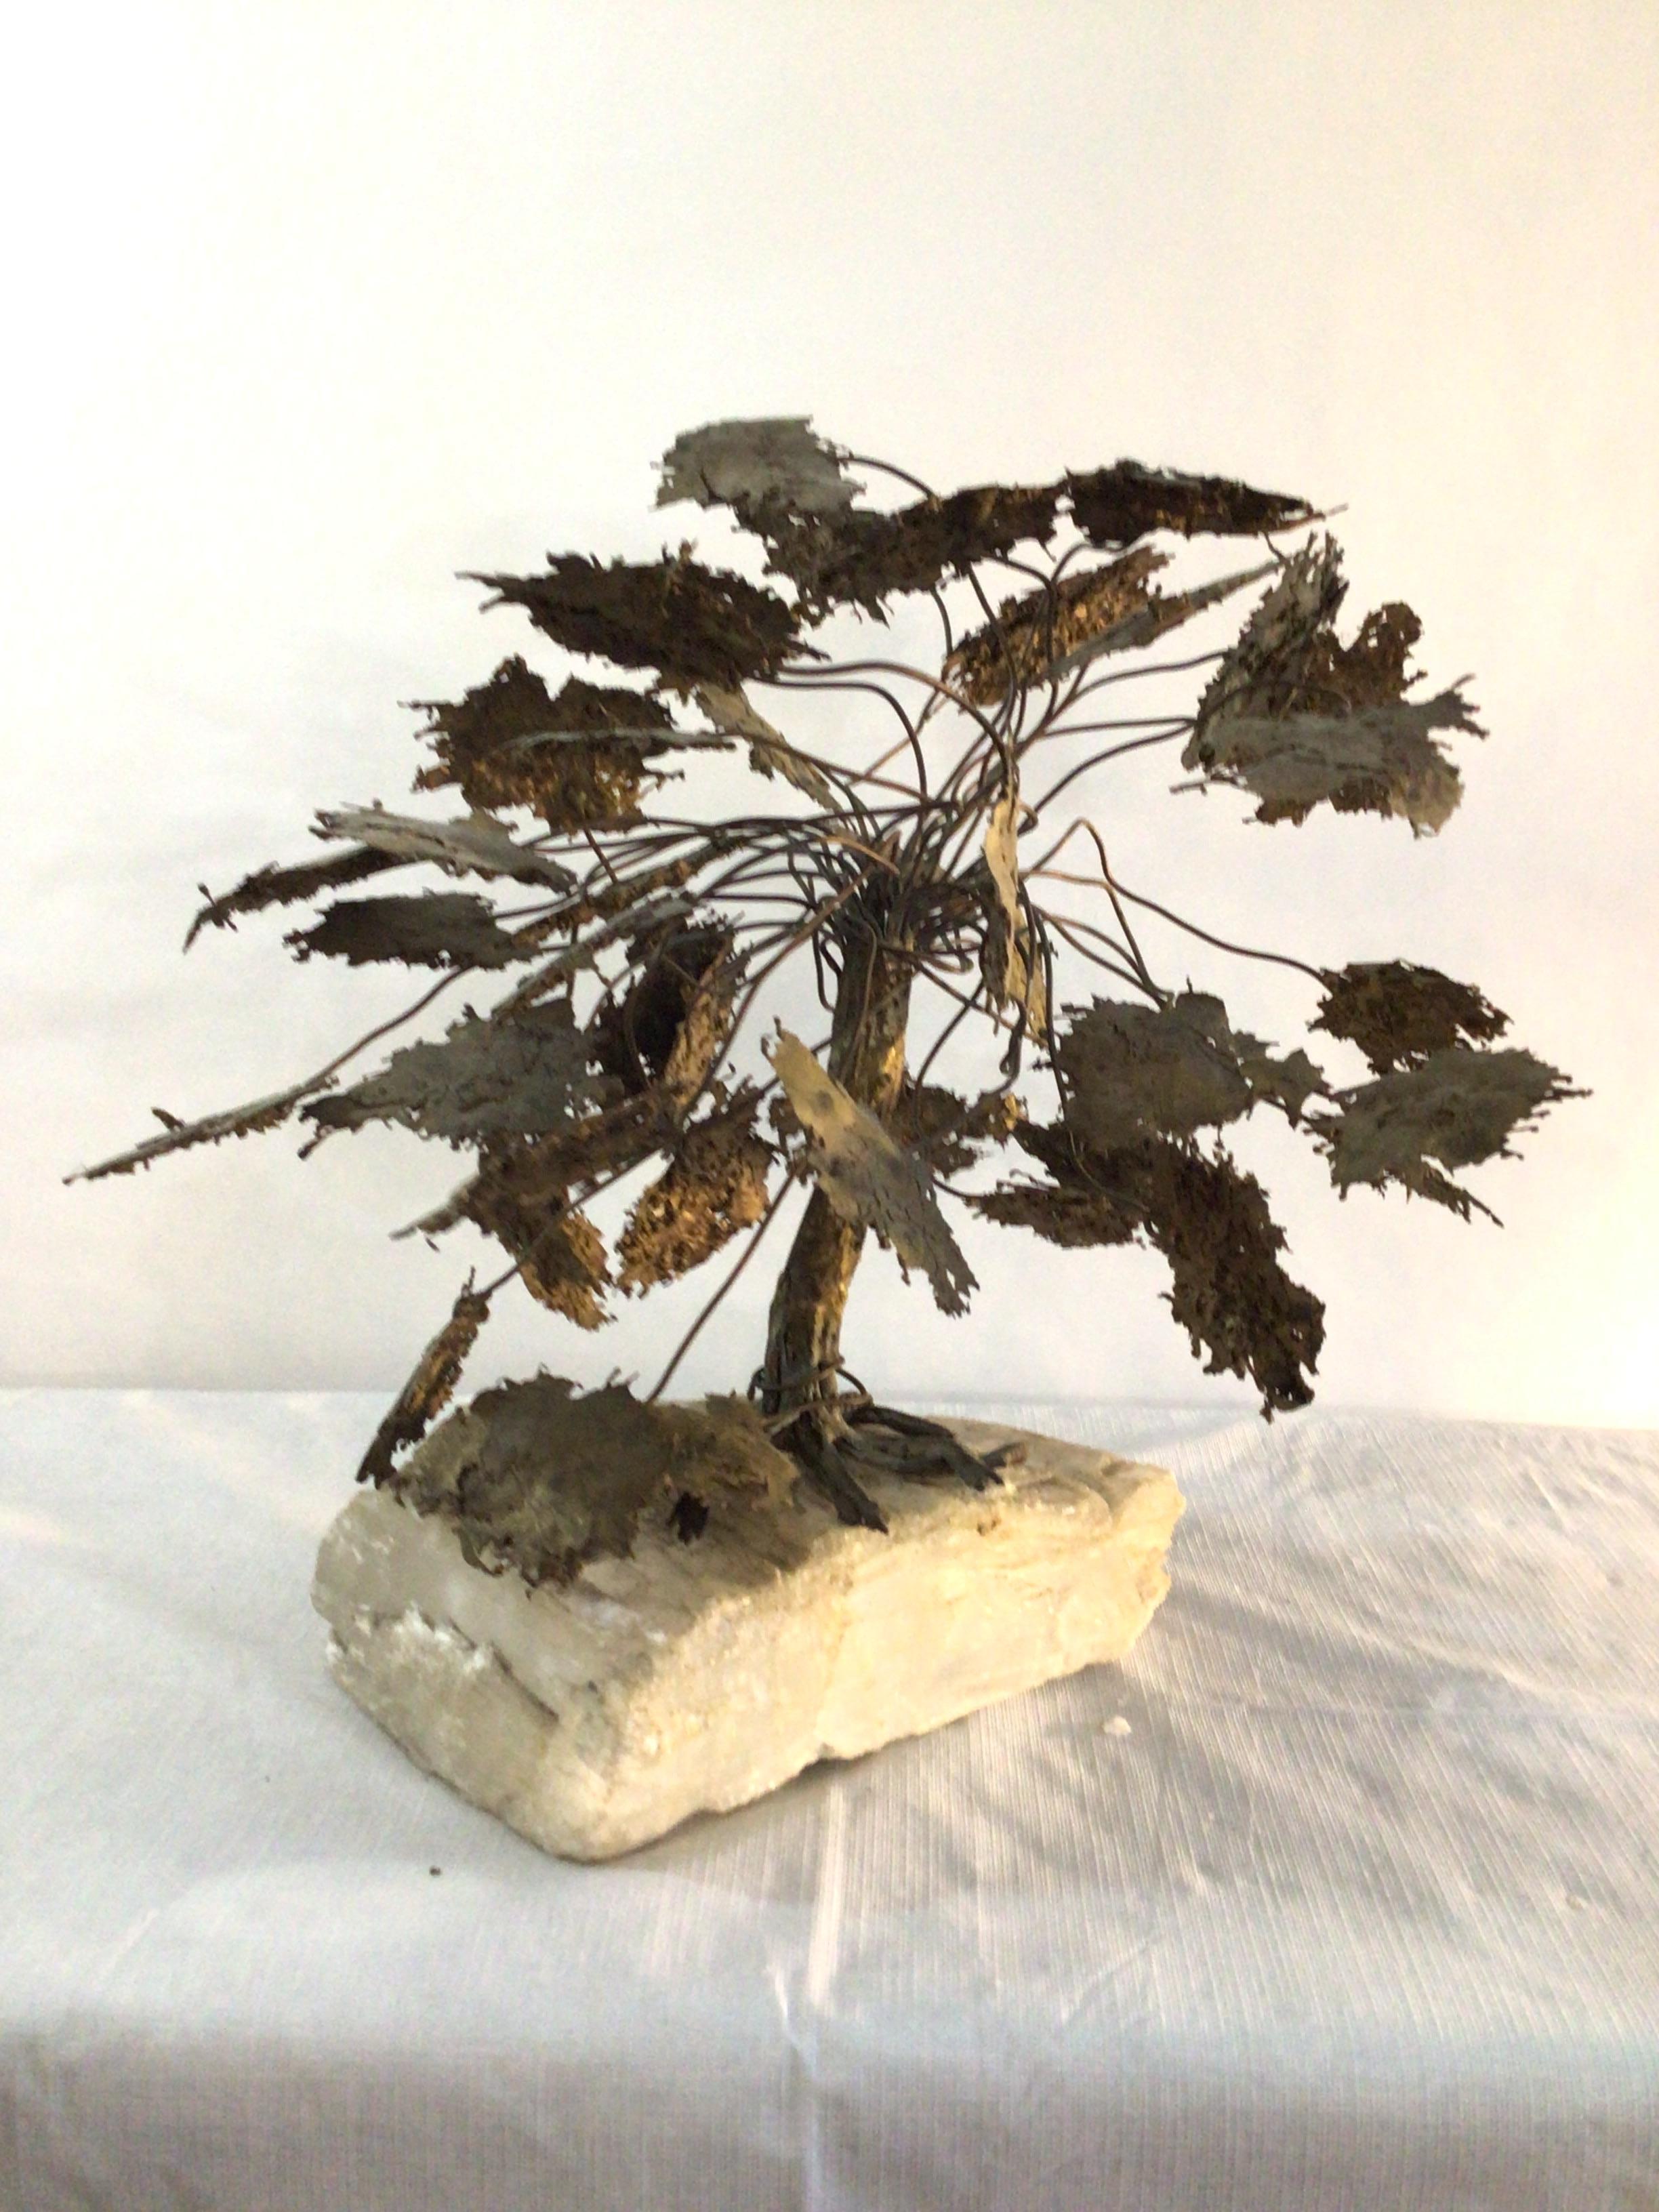 1960er Jahre Metall-Baum-Skulptur auf Quarzsteinsockel
Schöne Skulptur in Form eines großen Baumes mit Blättern auf einem Sockel aus Bergkristall in freier Form
Die Blätter haben geätzte Details auf der Ober- und Unterseite und es gibt einen